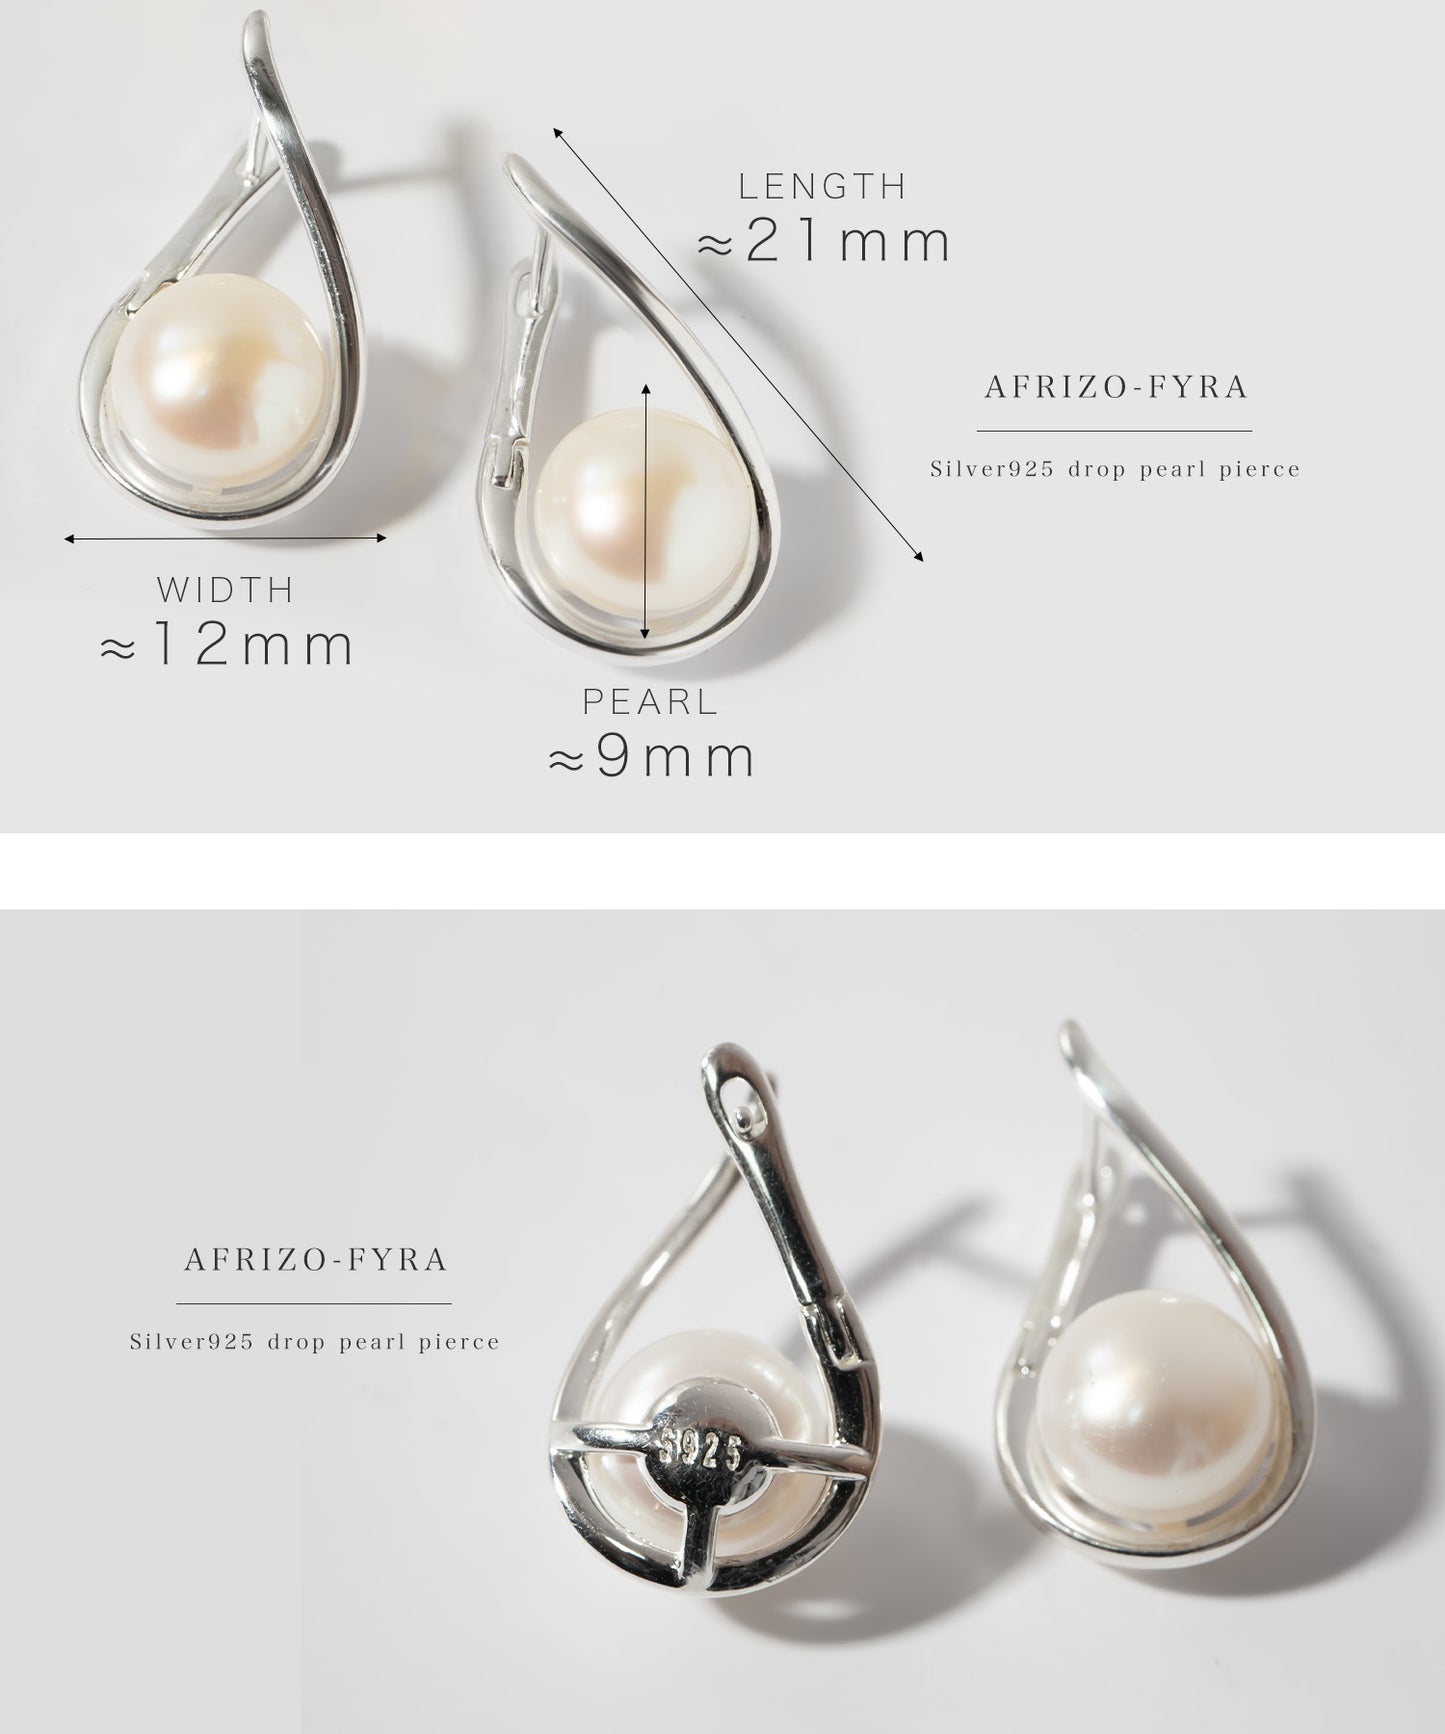 Silver925 Drop Pearl Earrings | AFRIZO-FYRA PIERCE